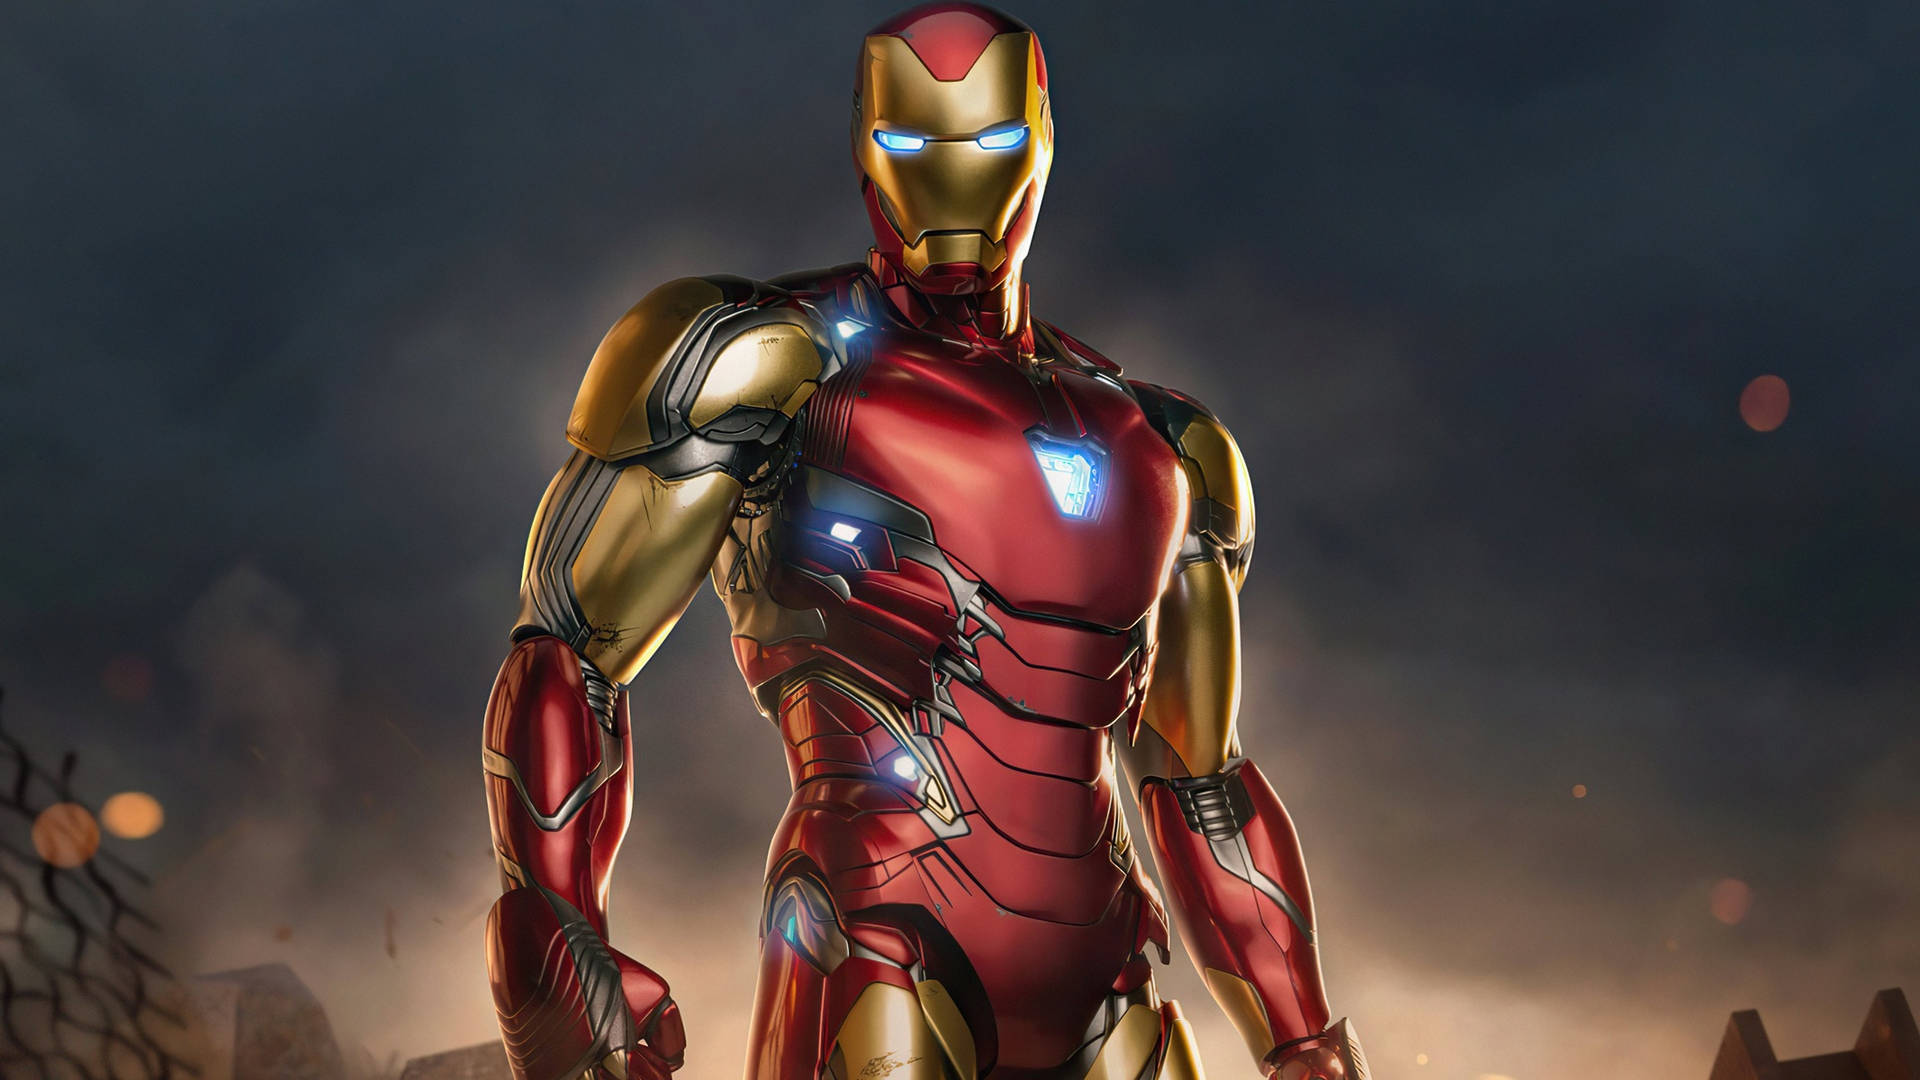 Avenger Endgame Iron Man Superhero Wallpaper